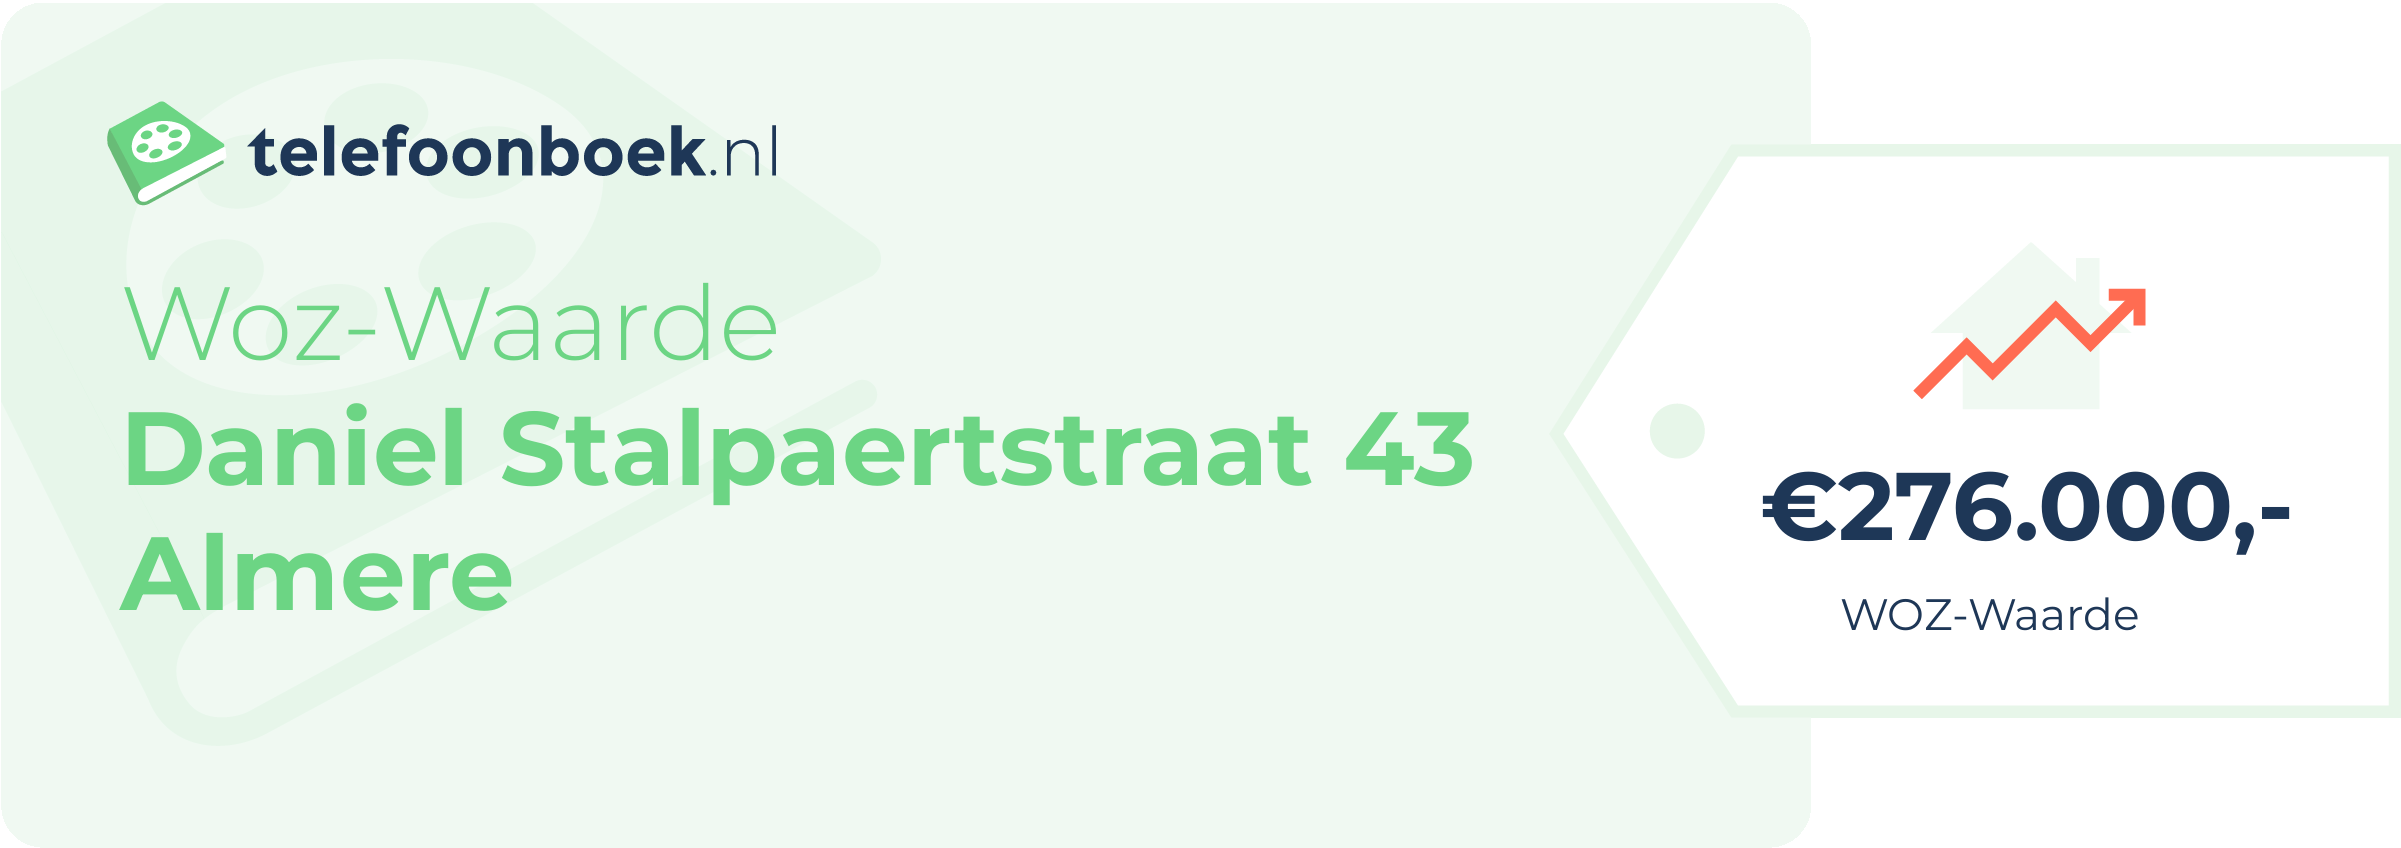 WOZ-waarde Daniel Stalpaertstraat 43 Almere